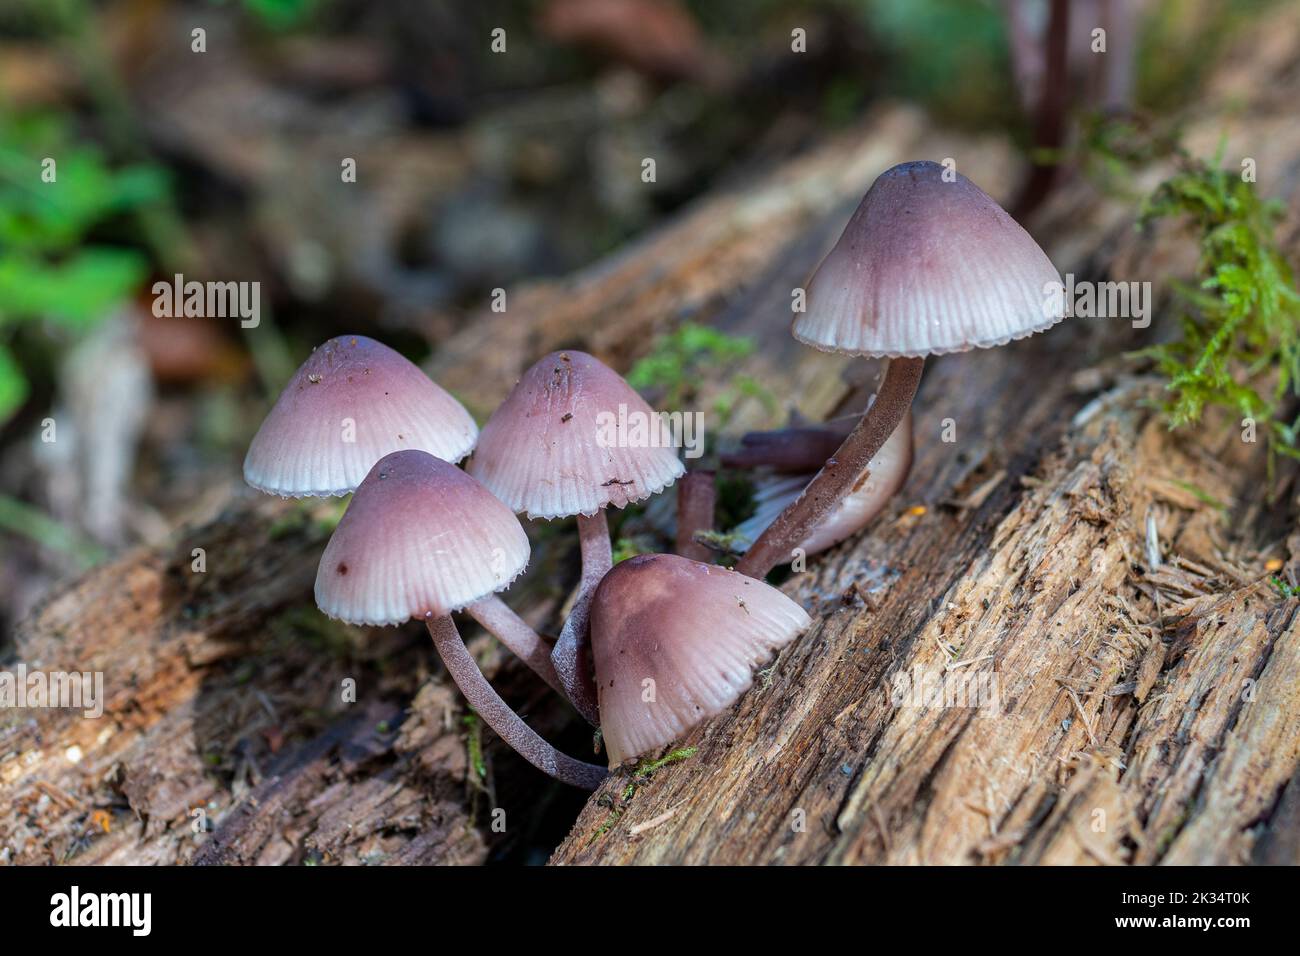 Grumo di funghi di cofano rosati (Mycena rosea), funghi, sgabelli da toadstole, che crescono su legno morto durante l'autunno, Inghilterra, Regno Unito Foto Stock